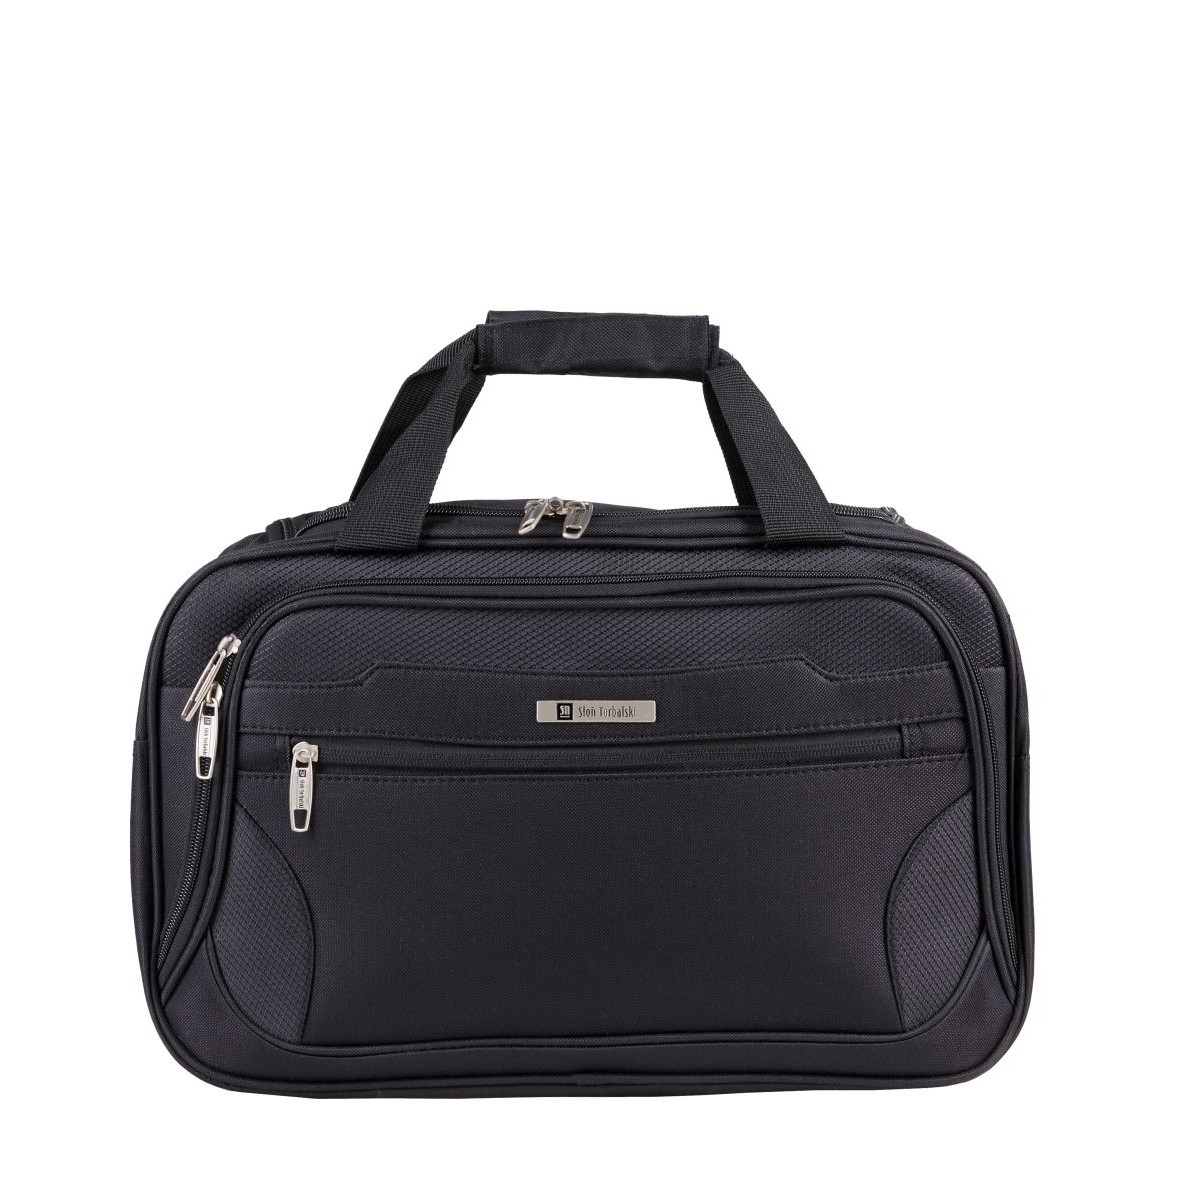 czarna torba podróżna materiałowa bagaż podręczny 40x20x25cm